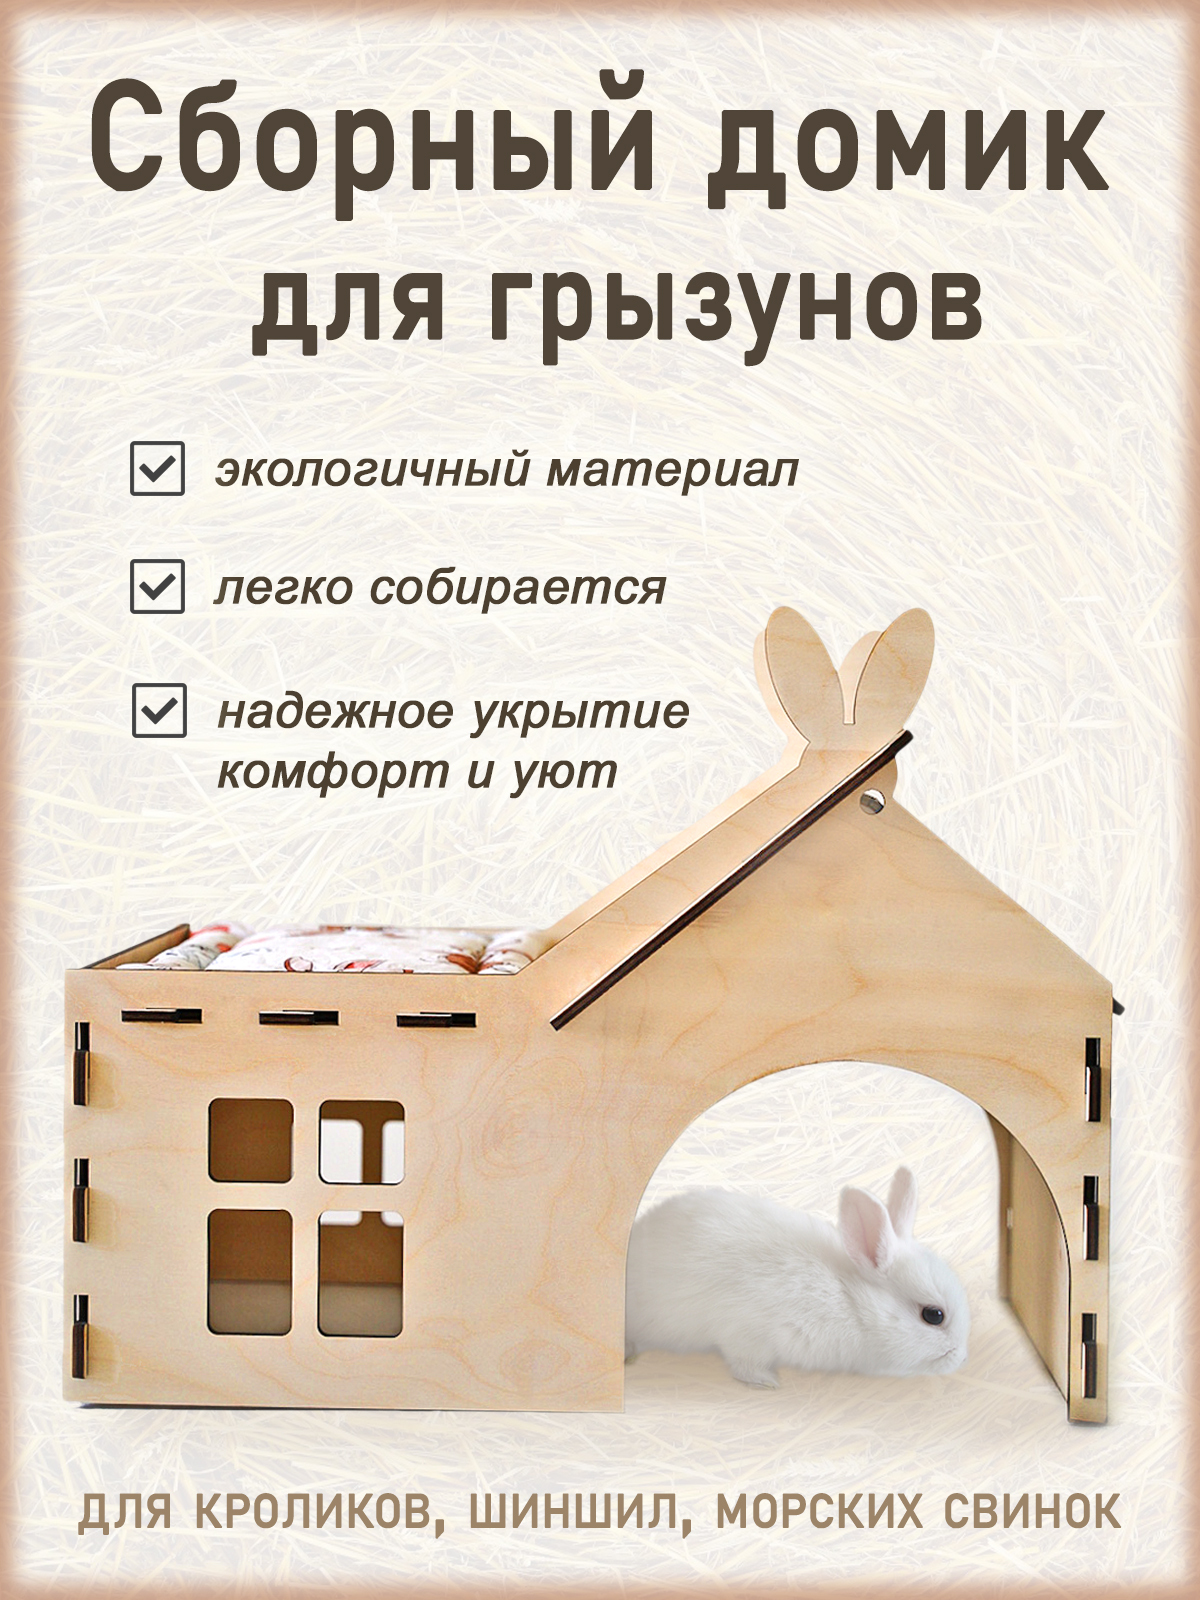 Клетки для декоративных кроликов: виды и советы по изготовлению и обустройству